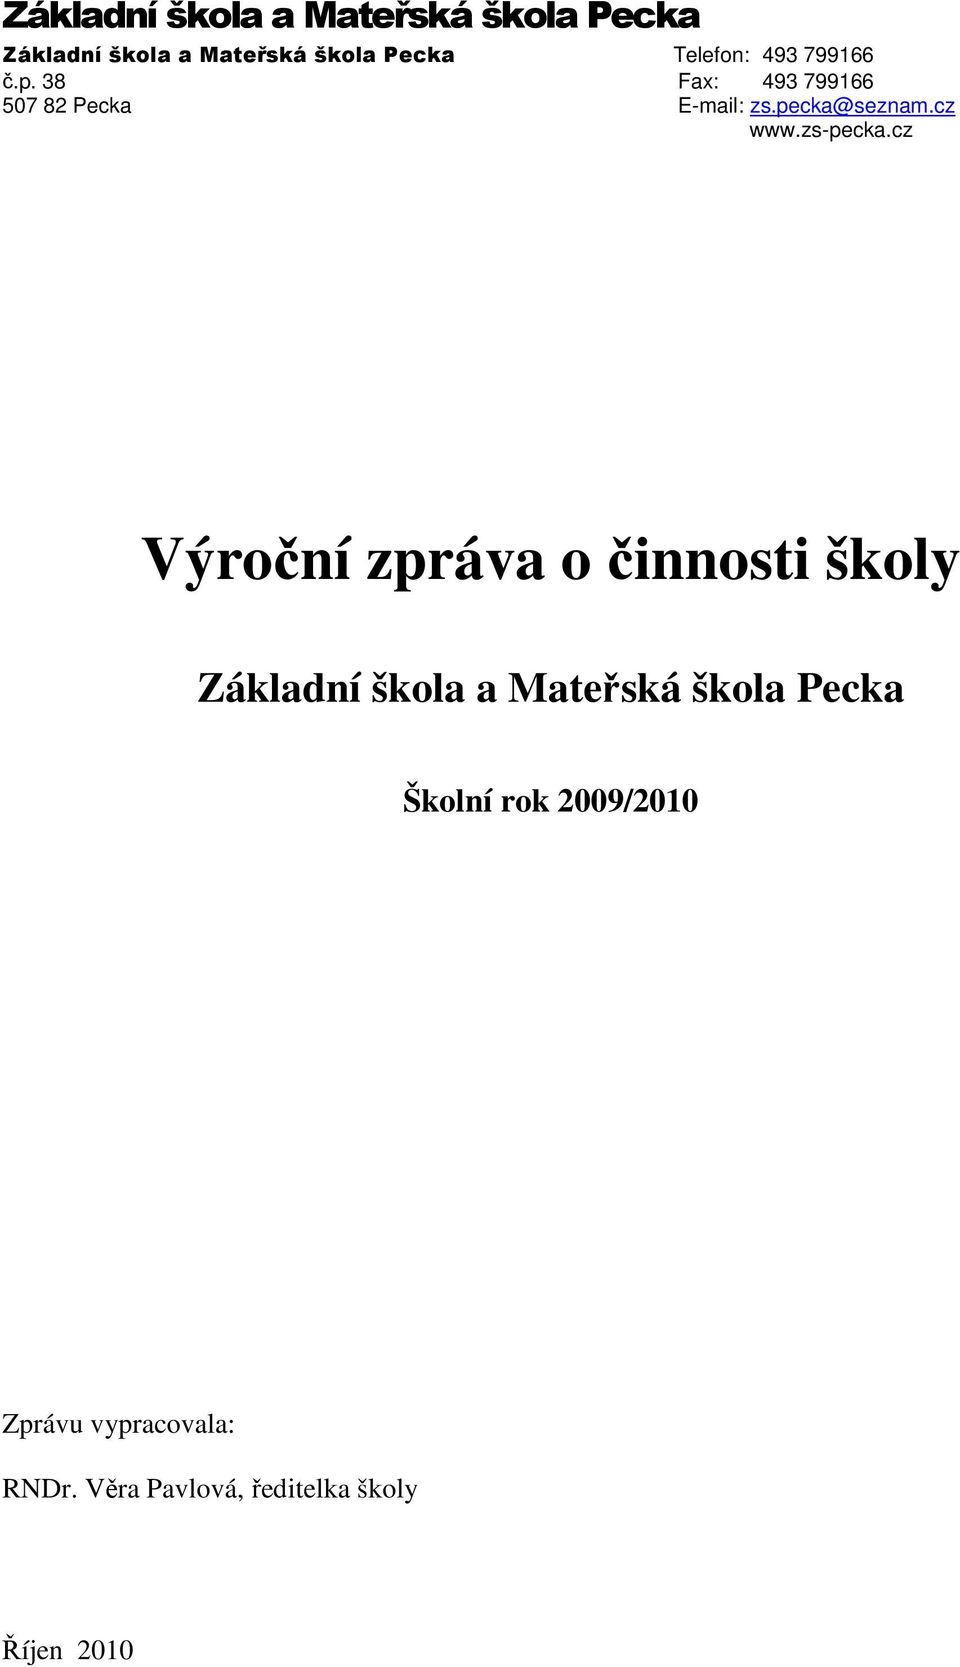 cz www.zs-pecka.